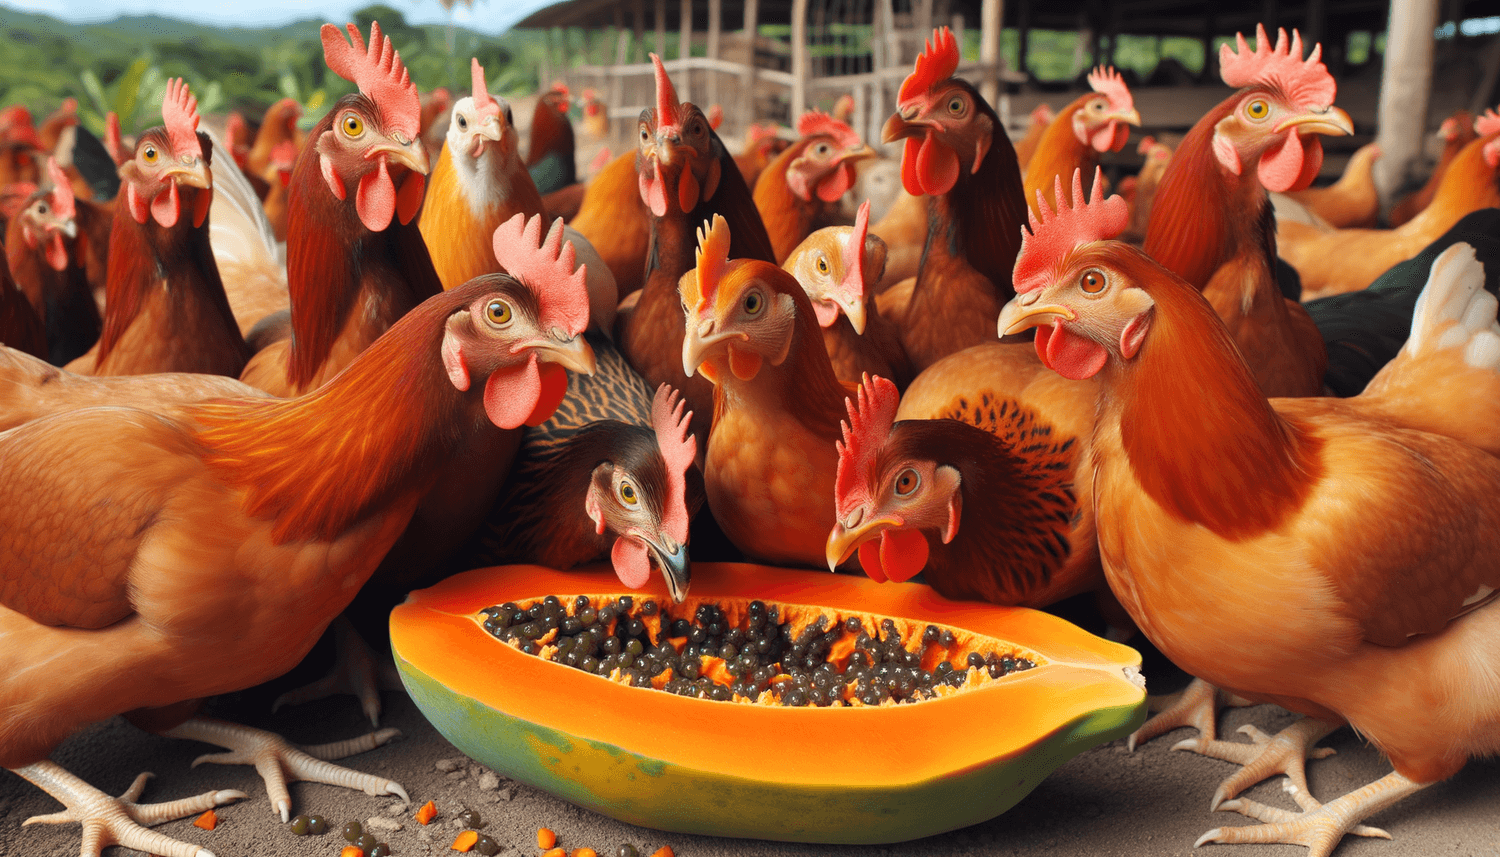 Can Chickens Eat Papaya?